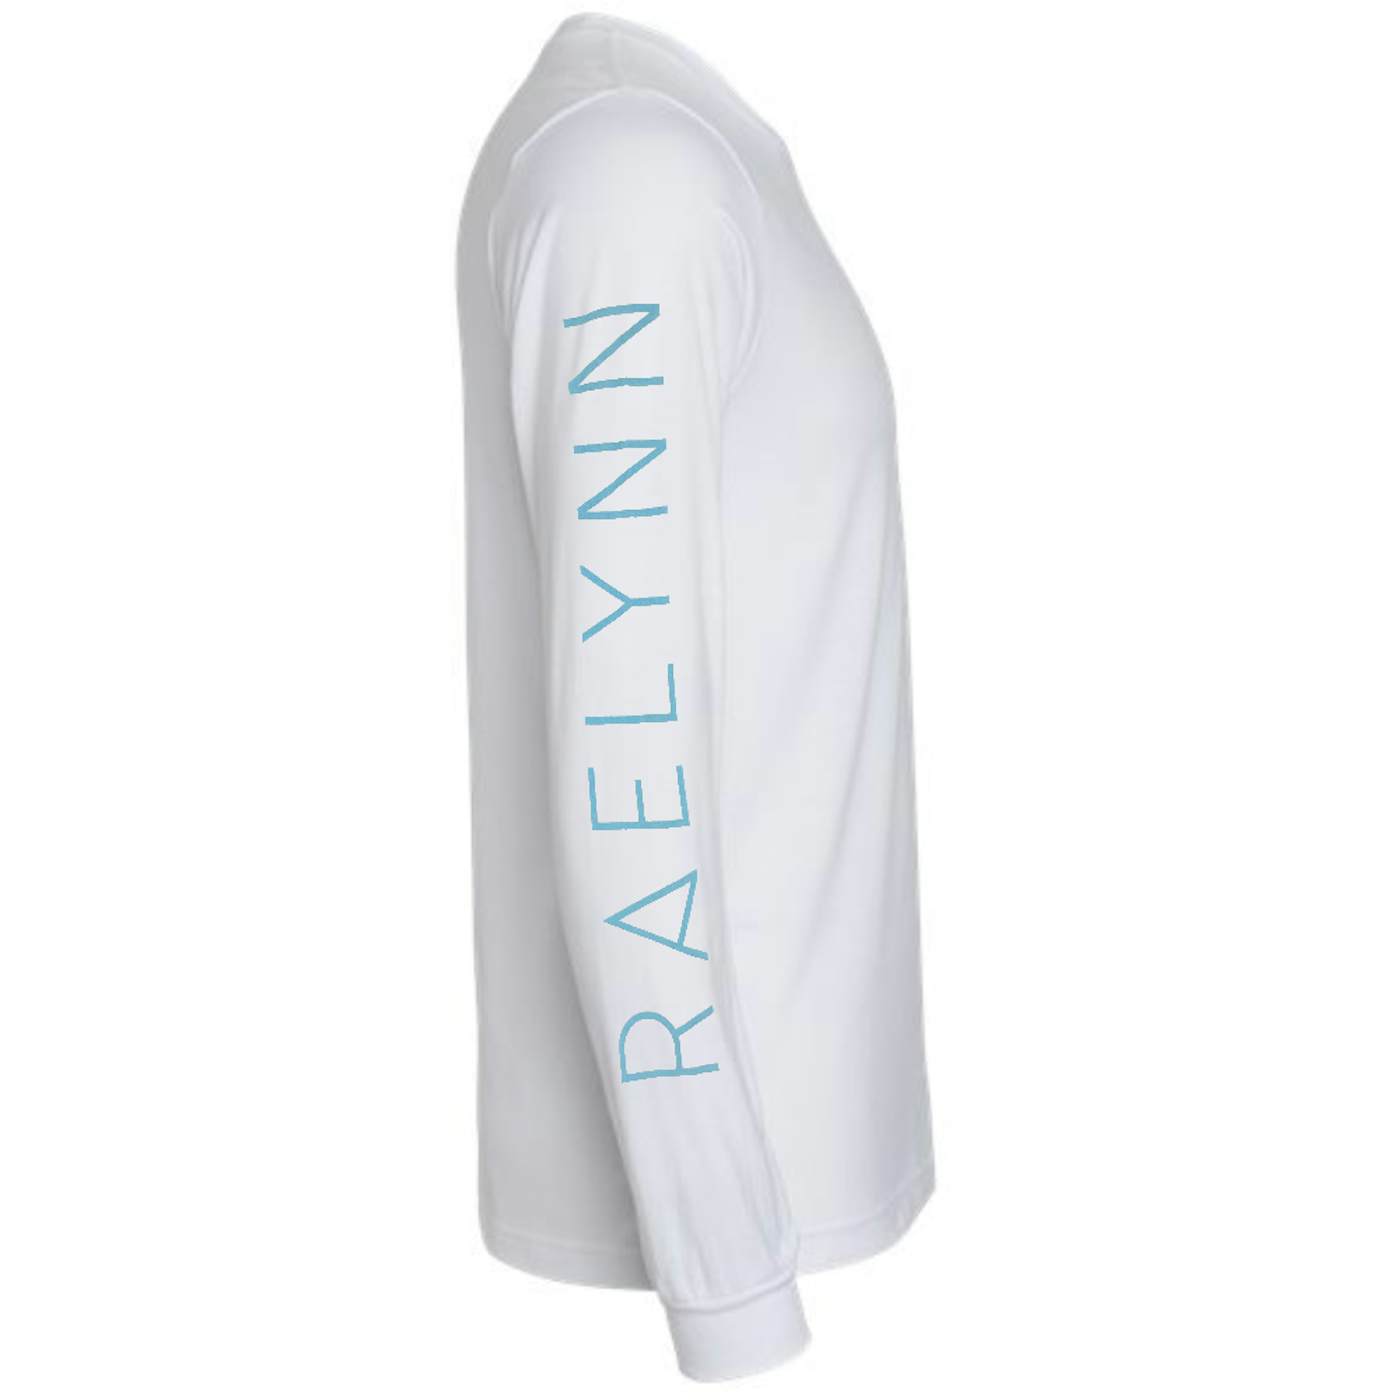 RaeLynn 2019 Long Sleeve White Tee